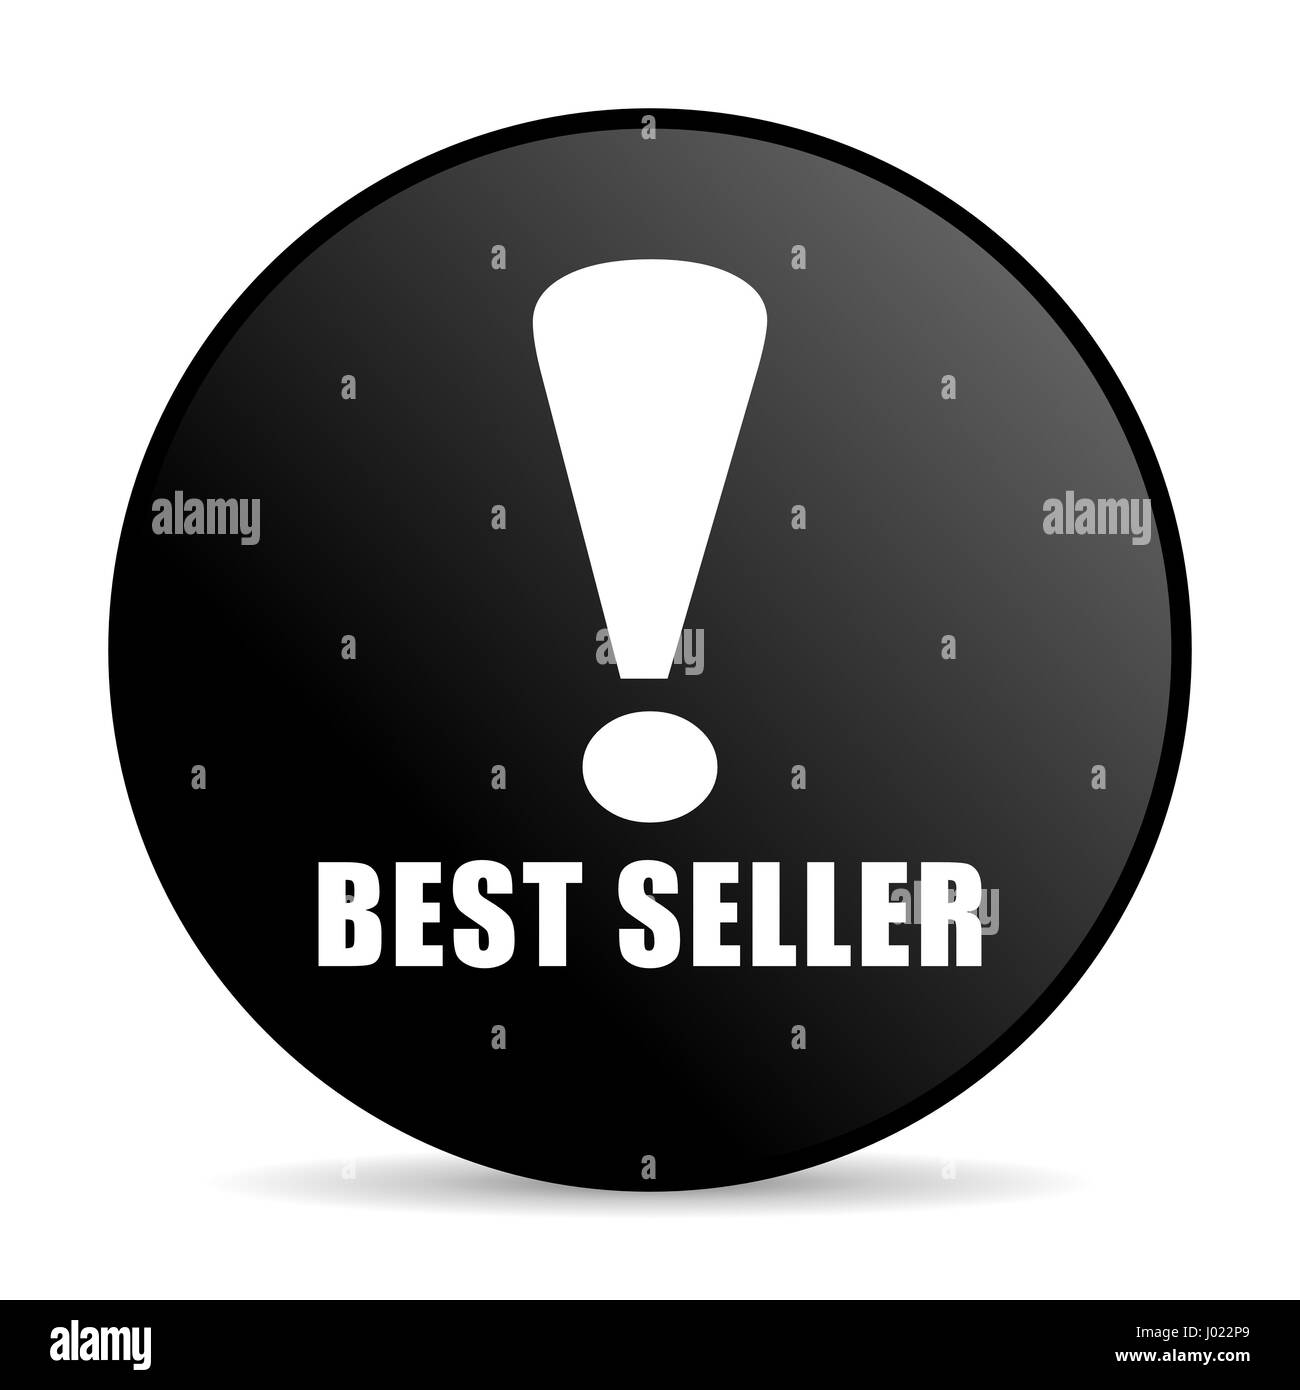 Best Seller color negro ronda diseño web icono internet sobre fondo blanco. Foto de stock